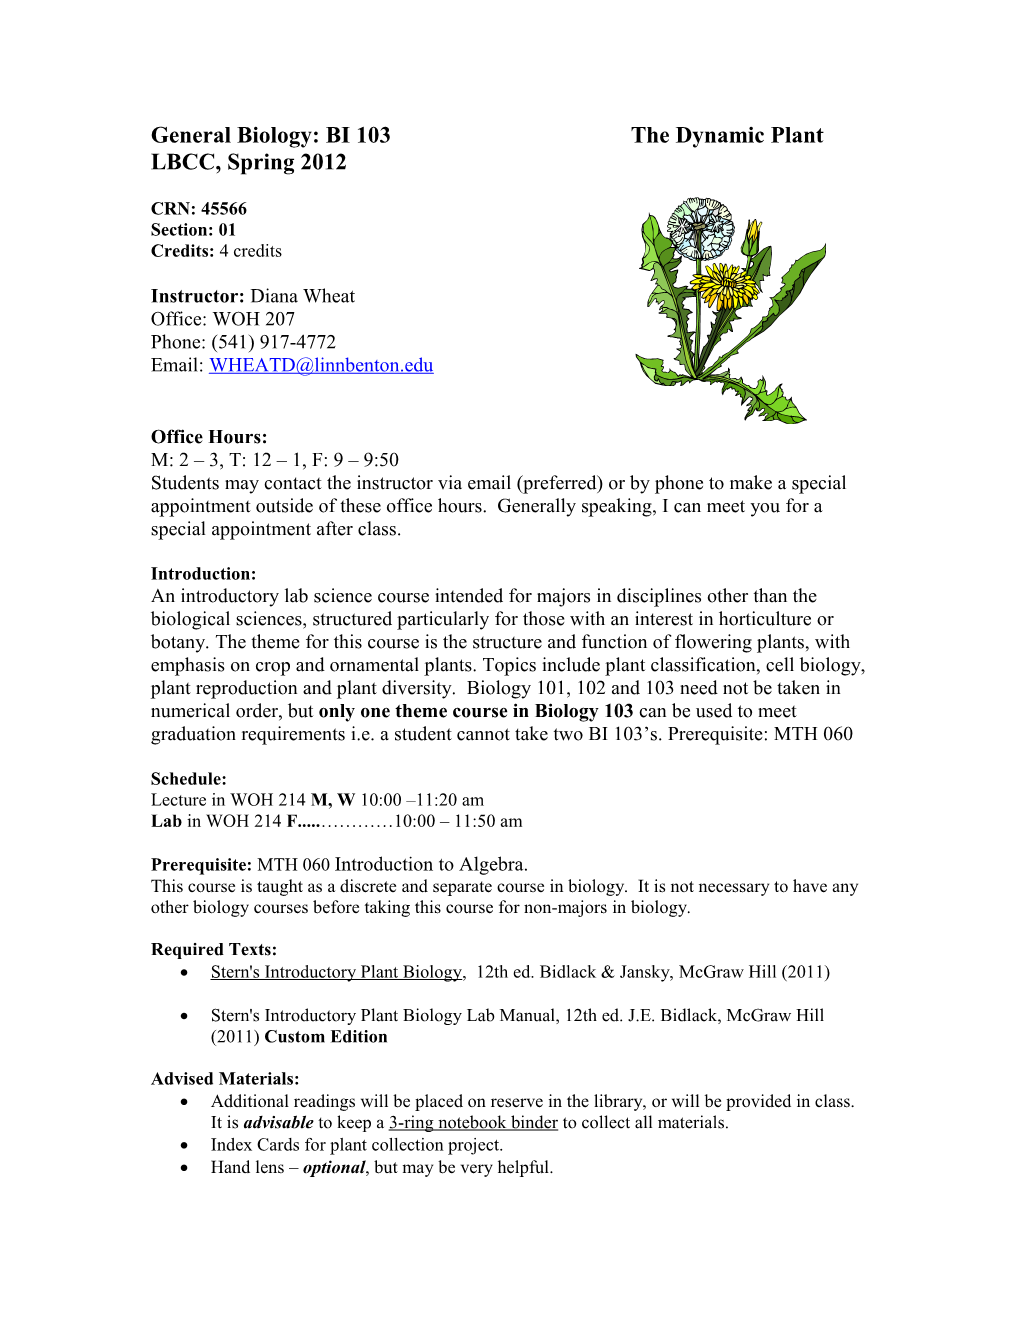 General Biology: BI 103 the Dynamic Plant